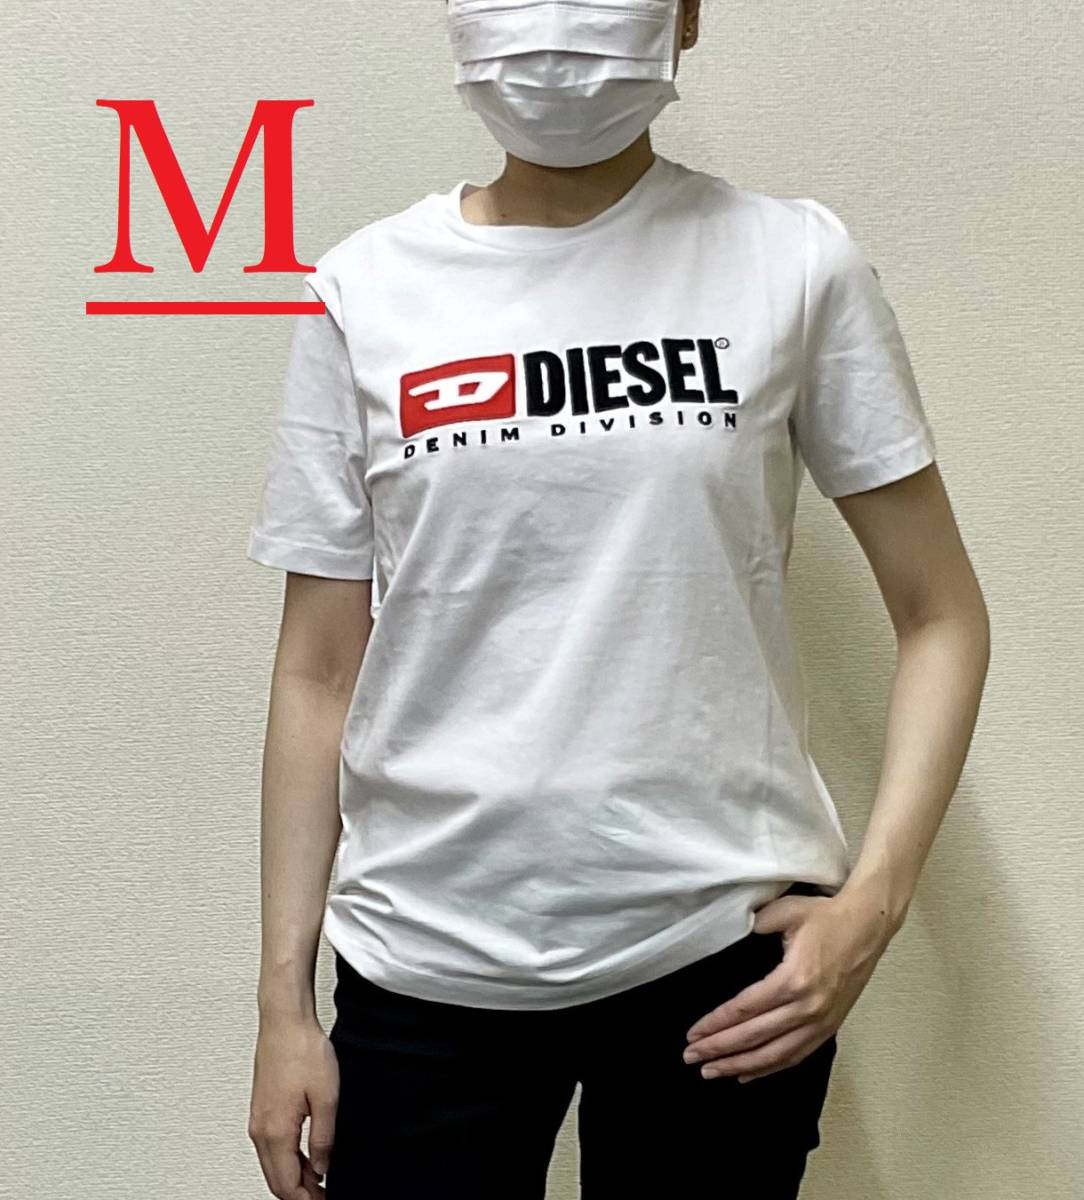 ディーゼル レディース Tシャツ 20B23 ホワイト Mサイズ 新品 タグ付き